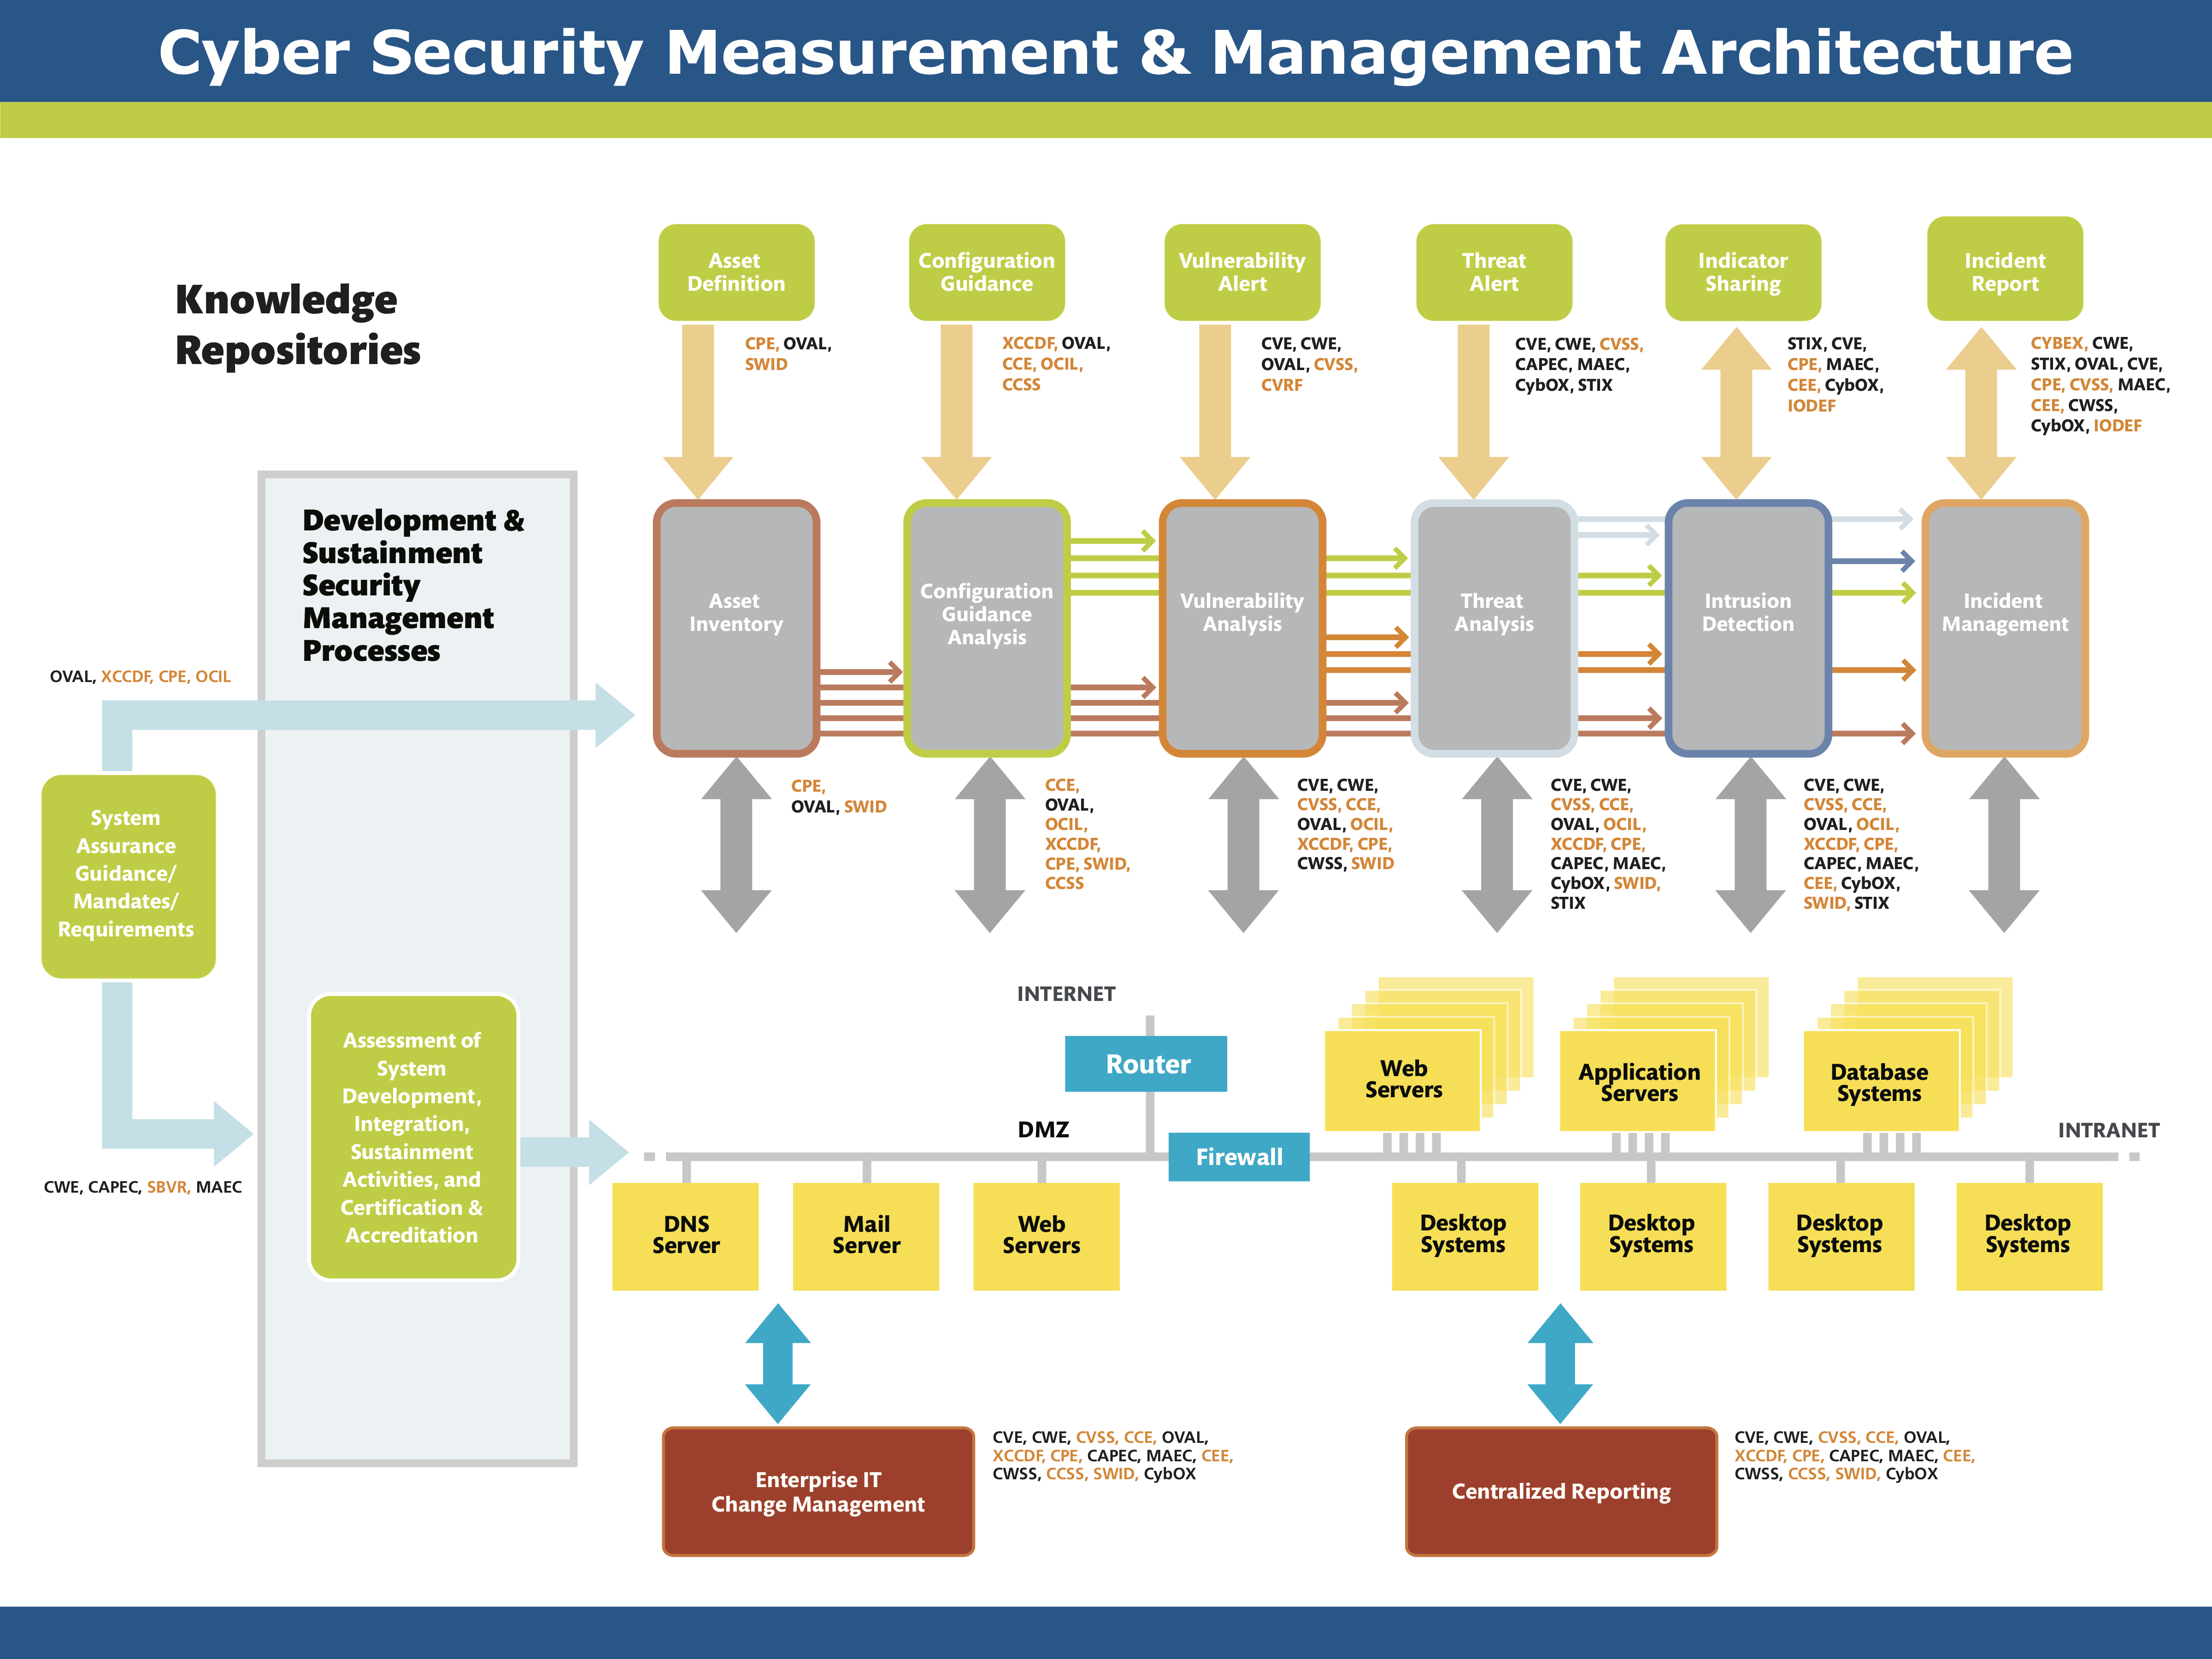 图 1-1 网络安全漏洞管理标准的安全测量和安全管理架构